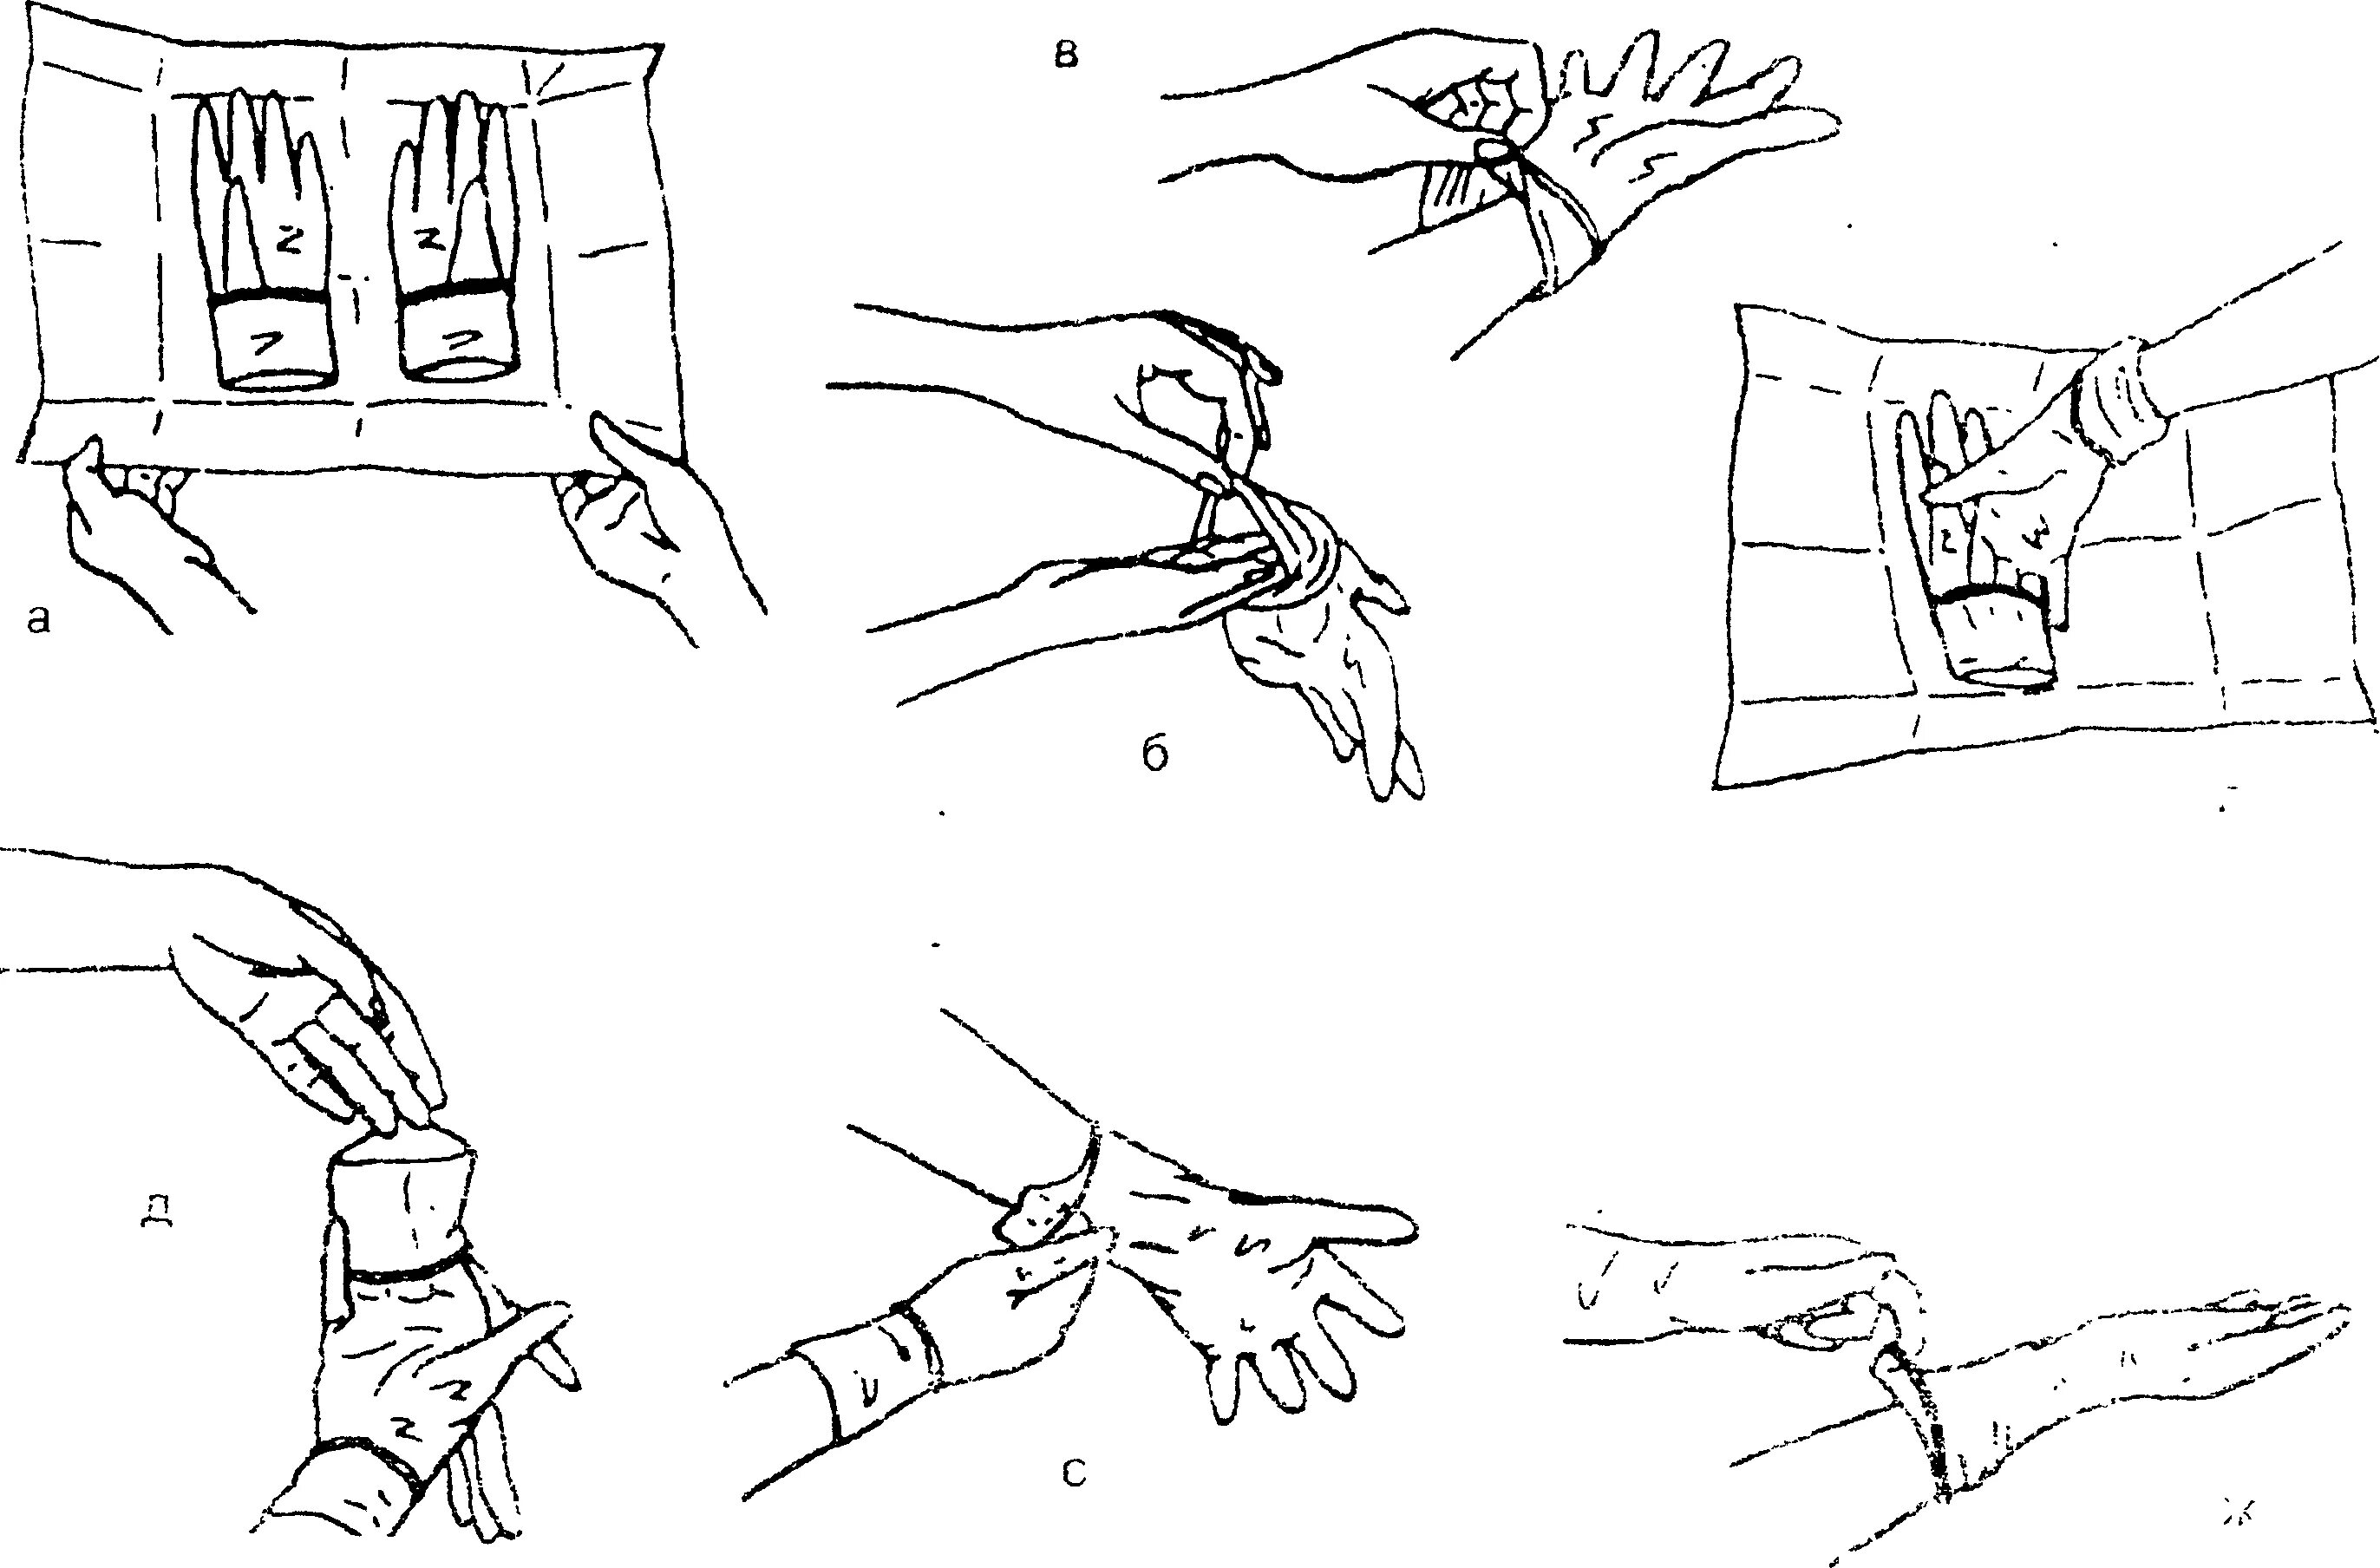 Снятие манипуляций. Надевание стерильных перчаток алгоритм. Техника одевания стерильных перчаток. Одевание стерильных перчаток алгоритм. Одевание стерильных перчаток на хирурга алгоритм.